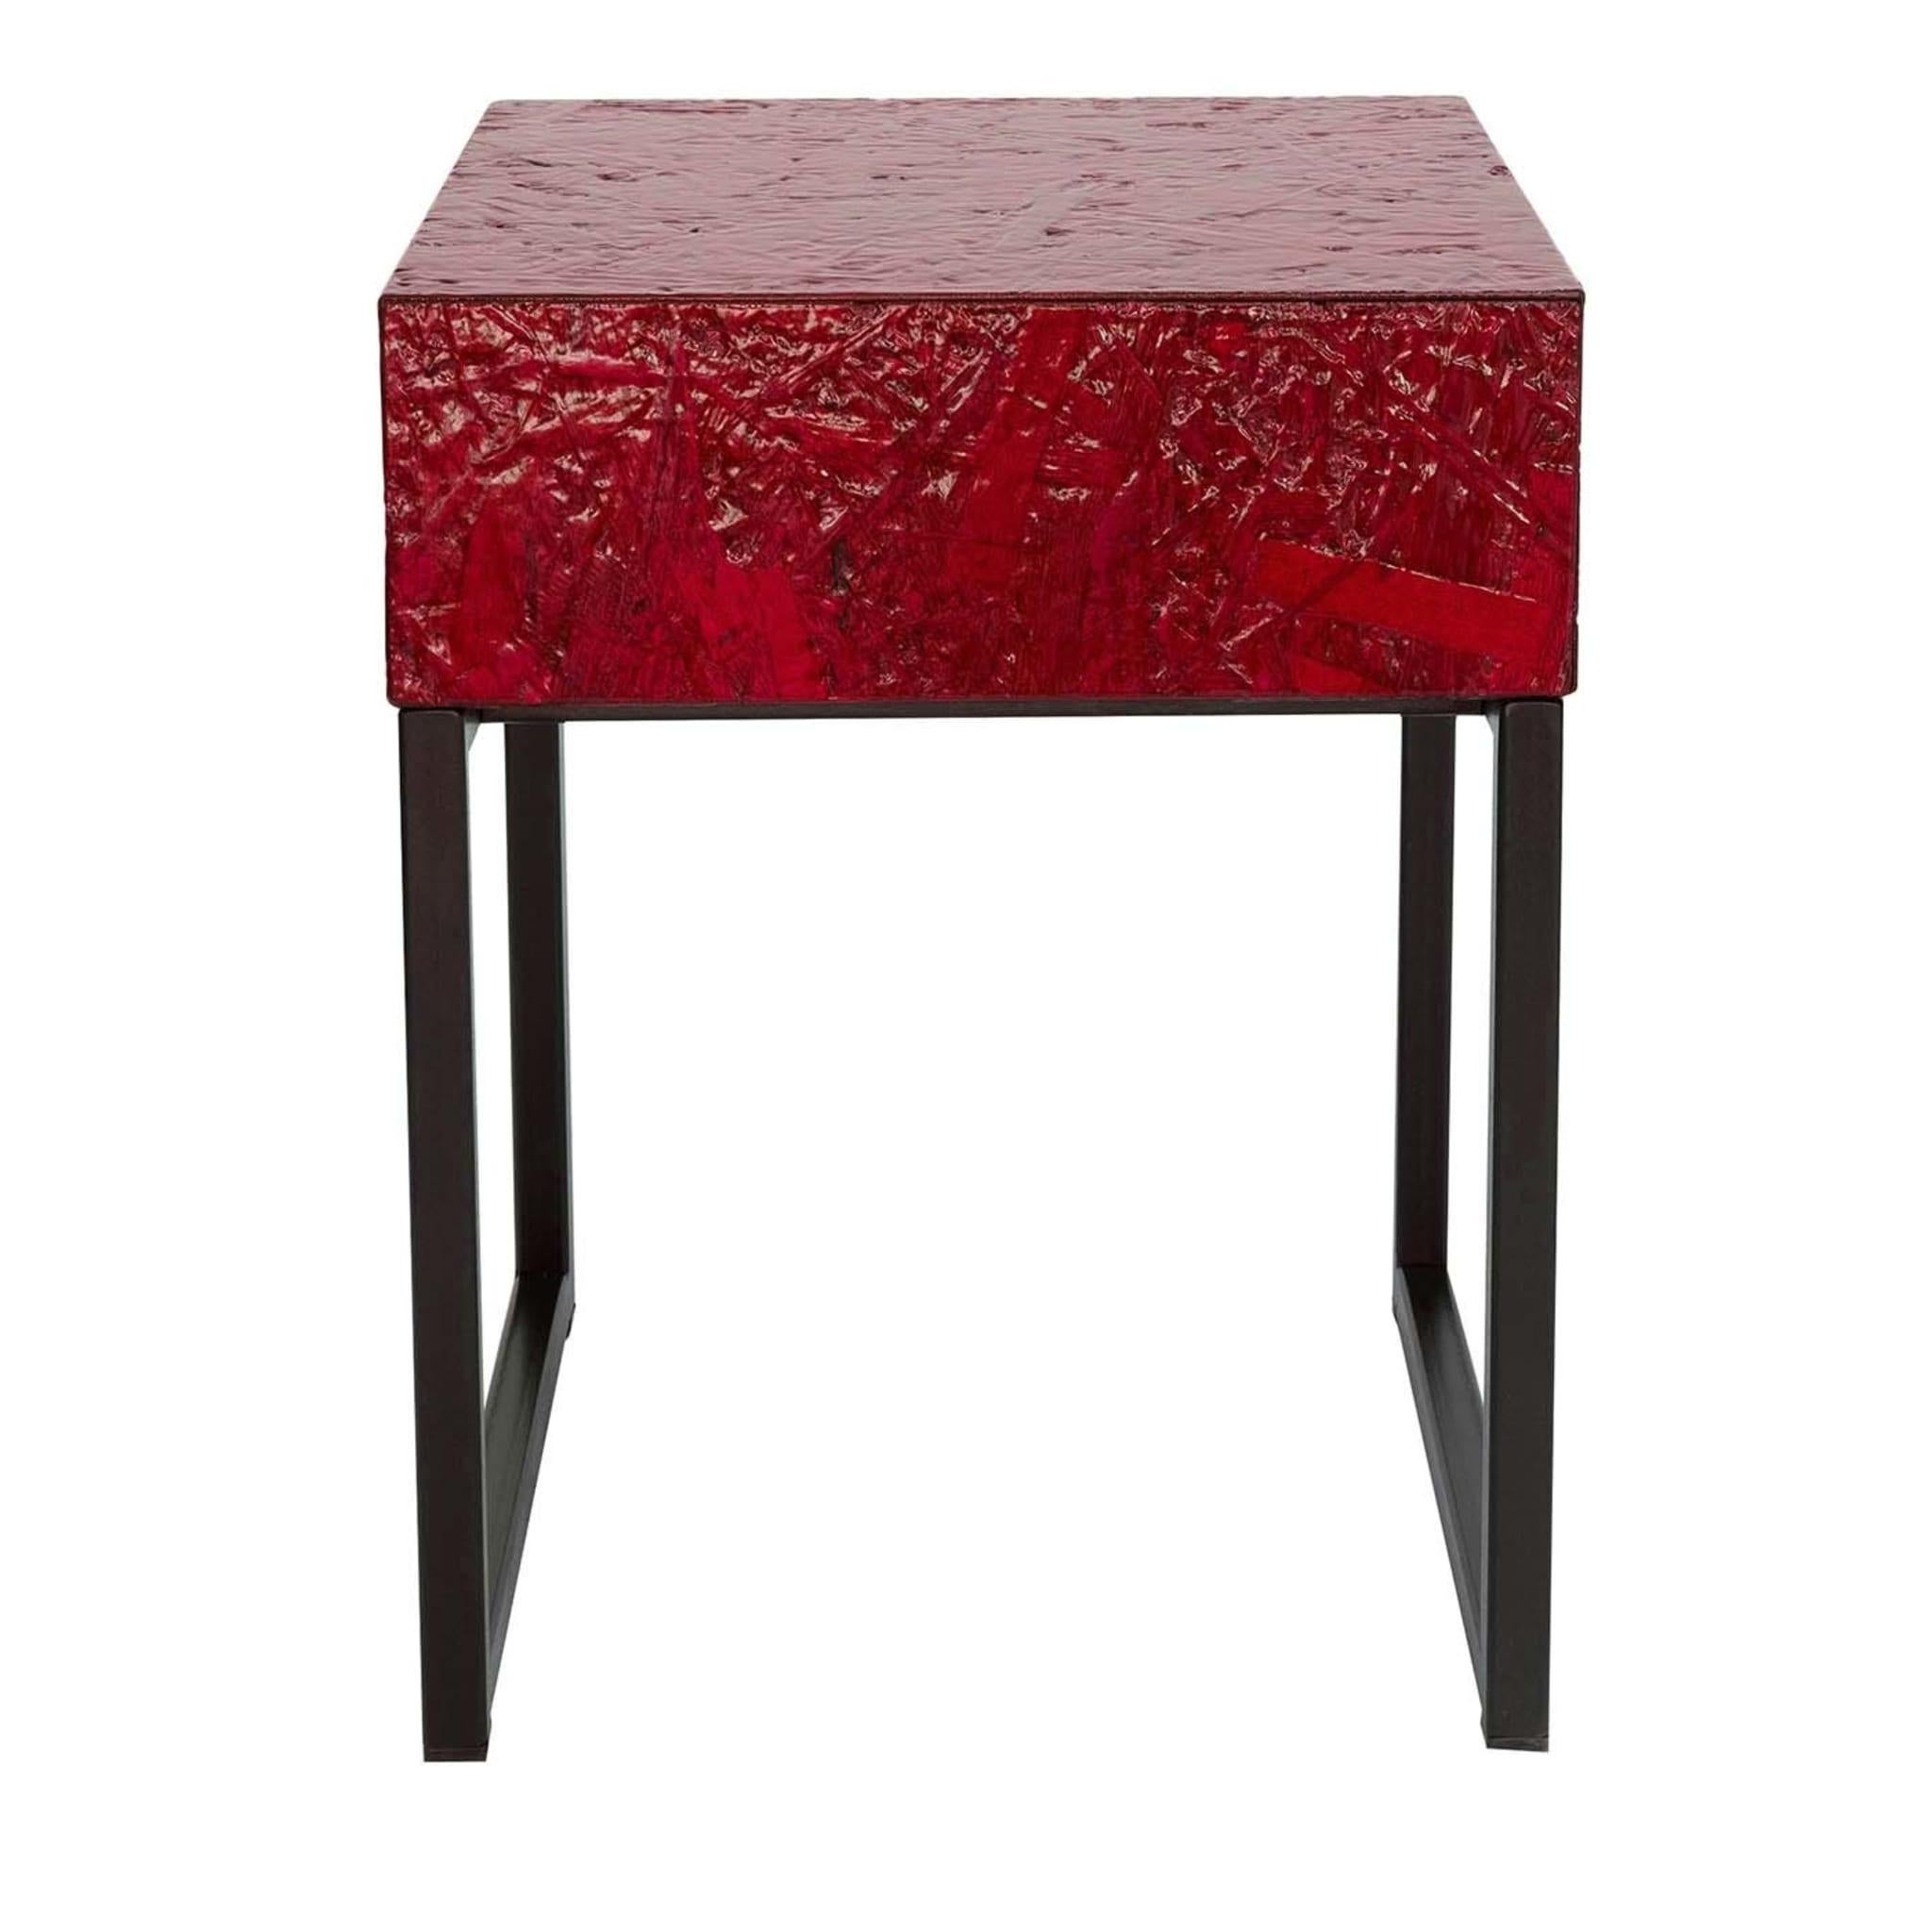 Pratique et élégante, cette table de chevet rouge conçue par Fabrizio Contaldo peut accueillir votre lampe de lecture ou servir de tabouret. Elle comporte un tiroir pratique et mesure 35 cm de côté et 45 cm de haut. Fabriqué en OBS brillant avec une